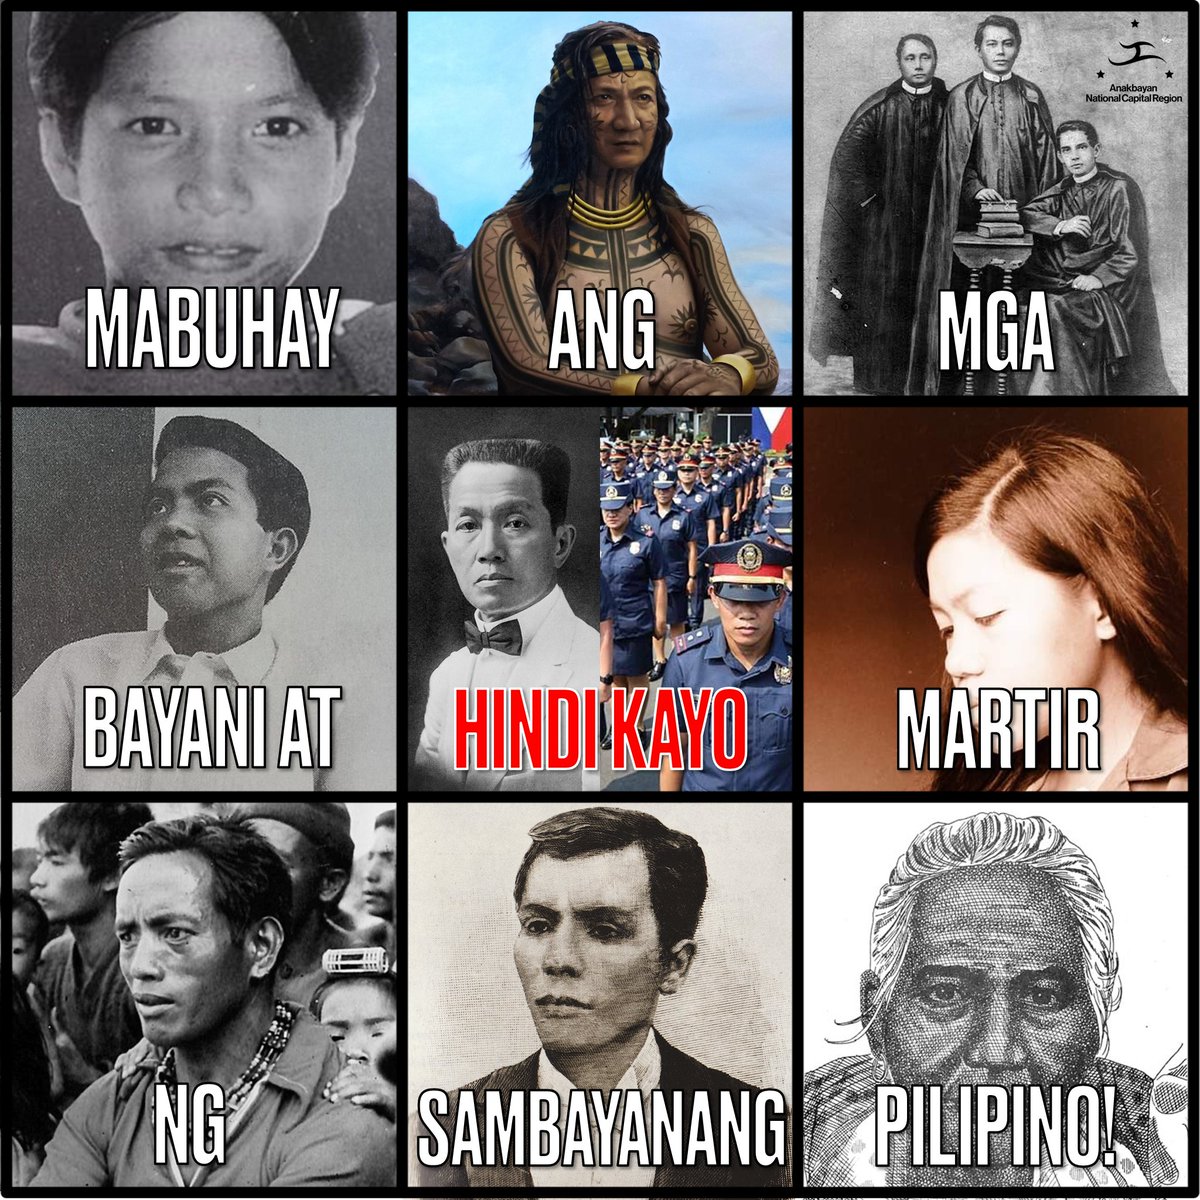 Ilan sa mga bayani't martir ng sambayanang Pilipino—maliban sa mga pasista at mga papet ng imperyalista.

#ArawNgMgaBayani